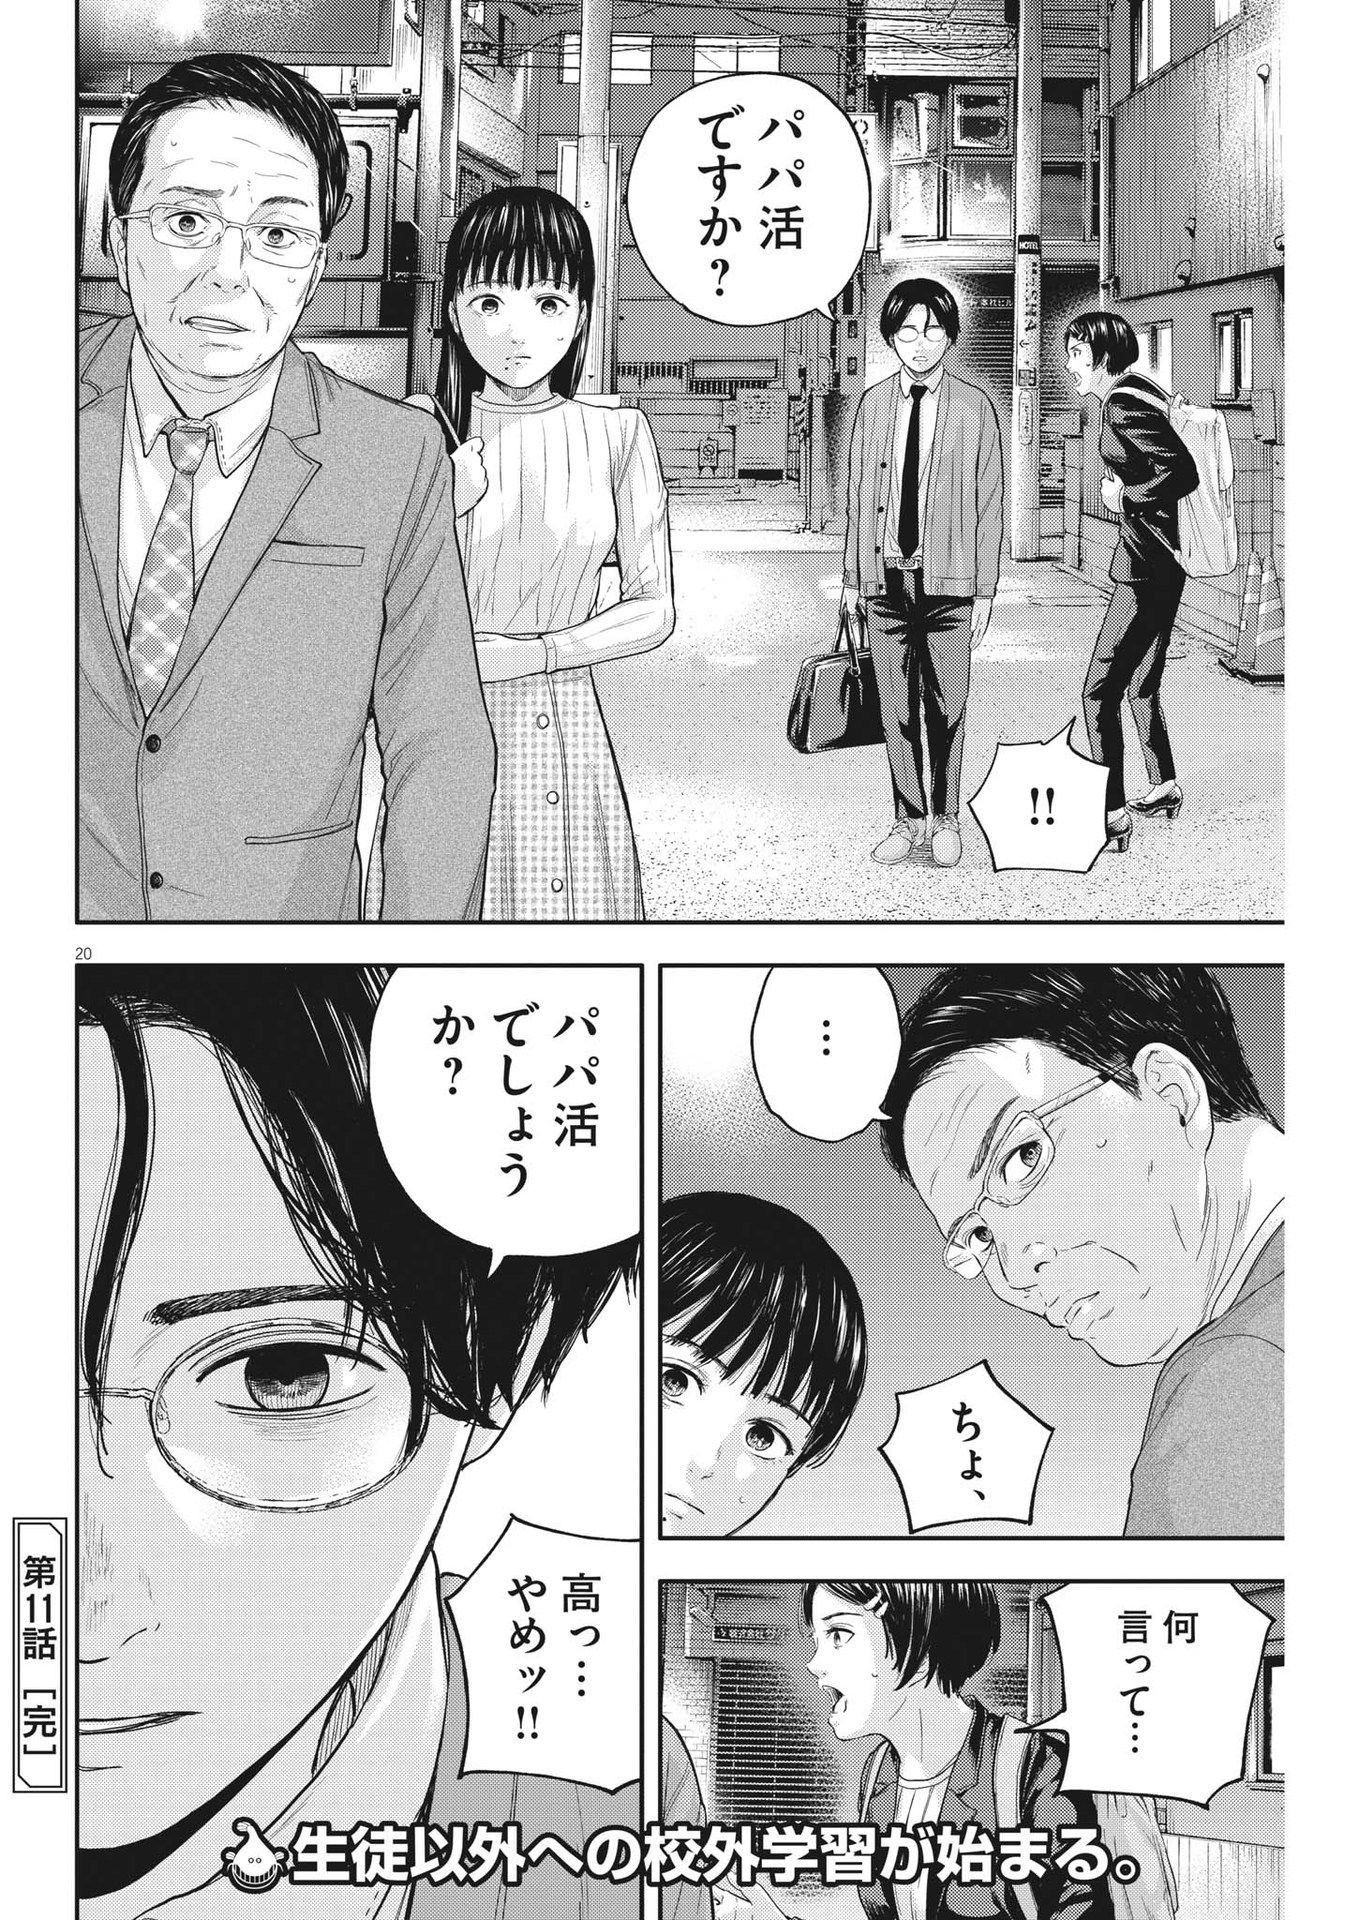 Yumenashi-sensei no Shinroshidou - Chapter 11 - Page 20